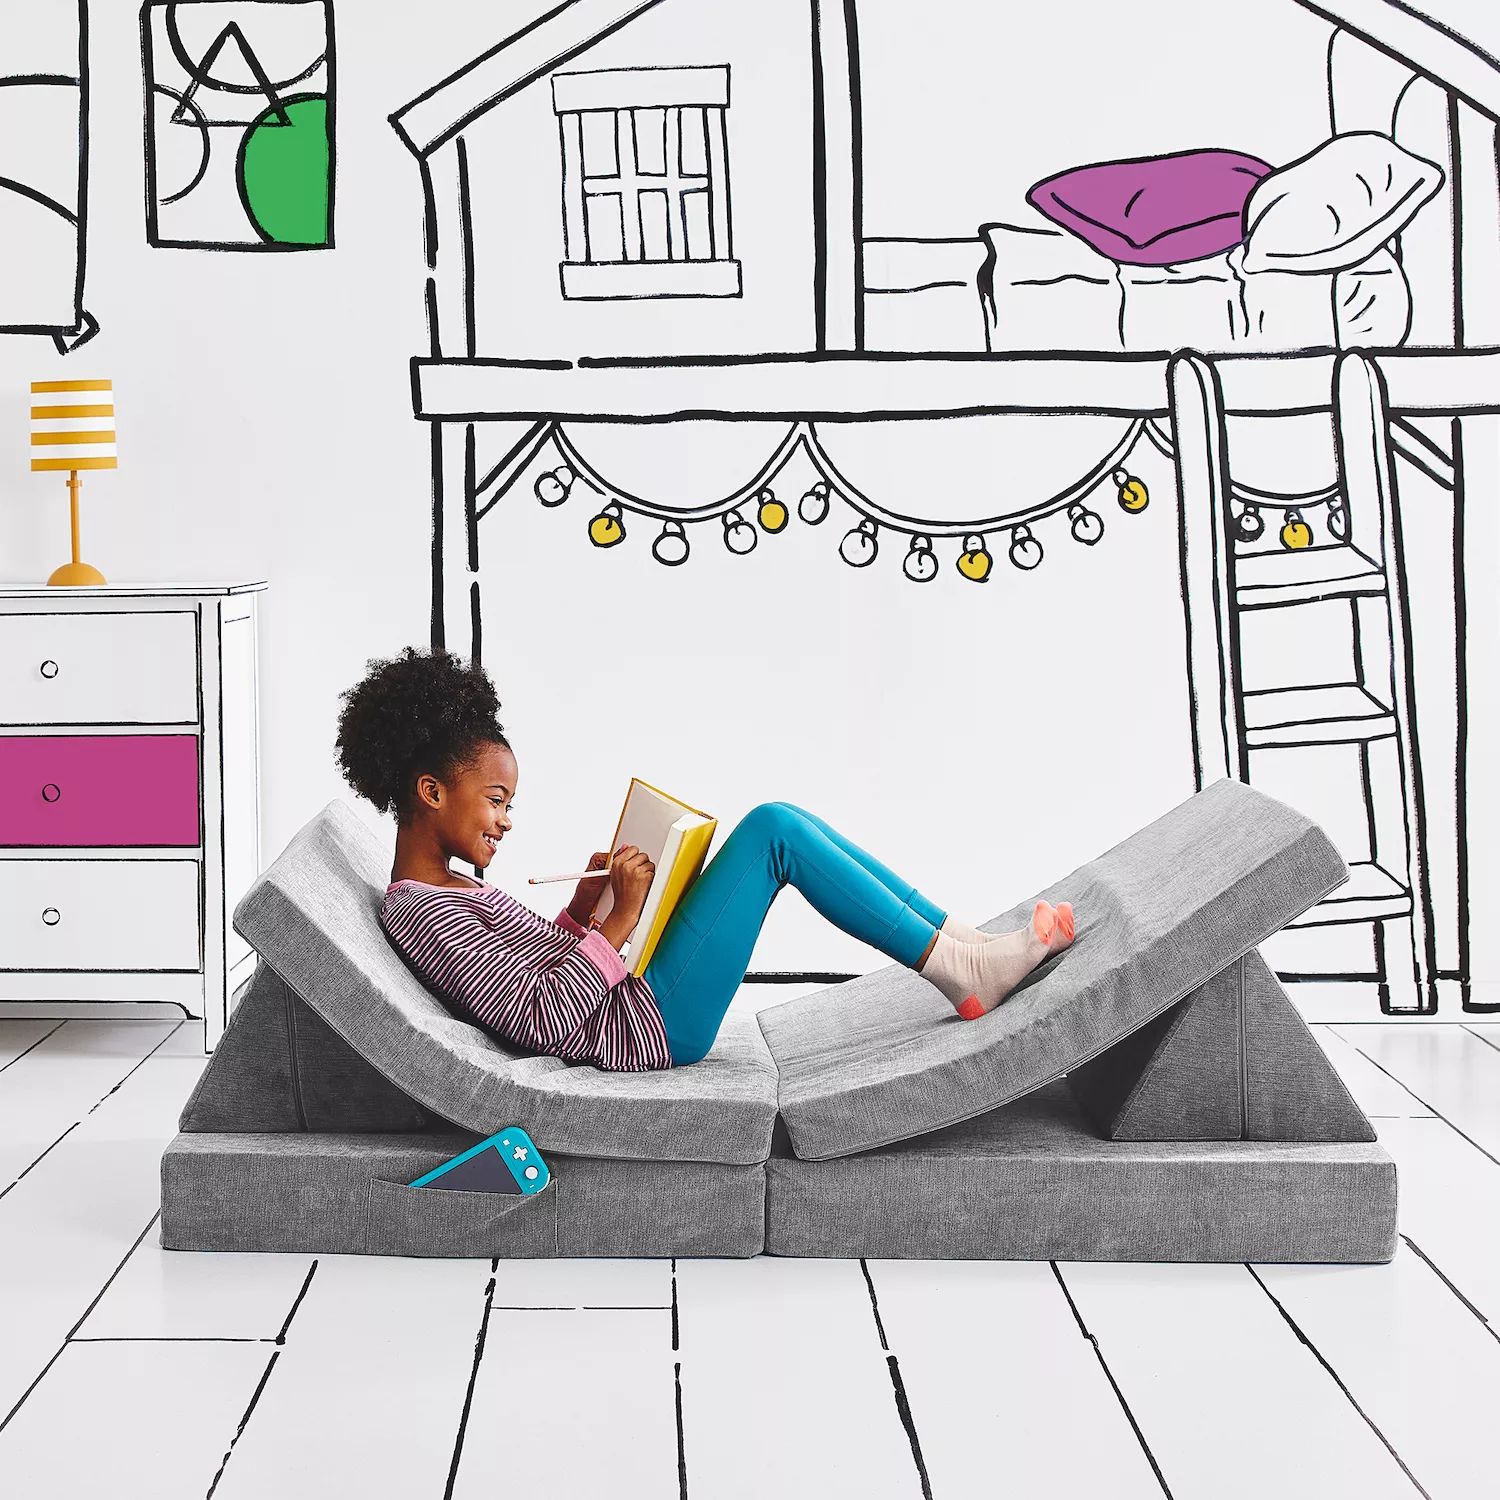 Складной трансформируемый игровой диван для детей и малышей Yourigami YOURIGAMI PLAY SOFA, синий cx children s sofa cartoon sofa cute crown small sofa